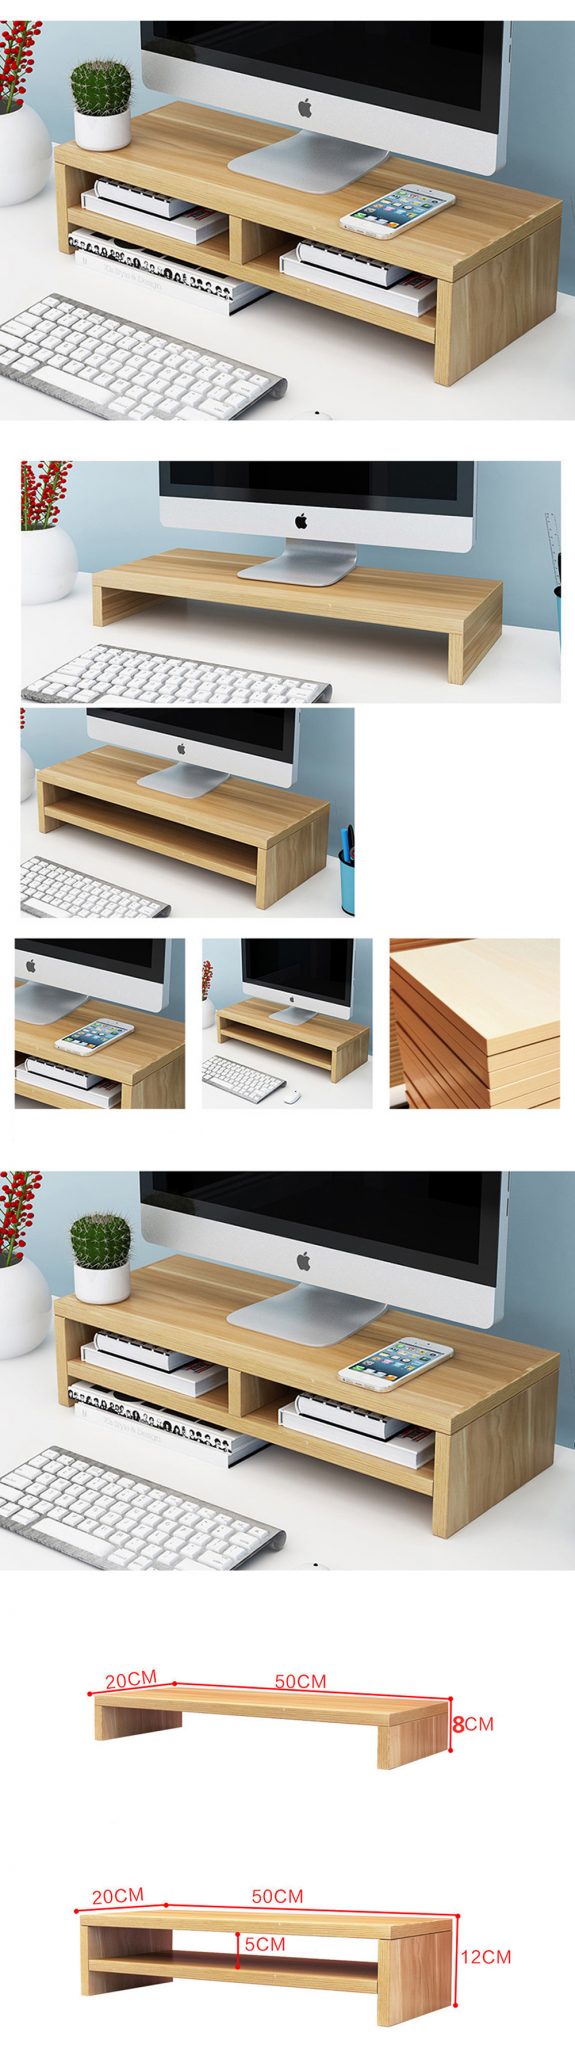 Được làm từ gỗ và thiết kế hợp với mọi mẫu bàn làm việc mà bạn đang có sẵn.